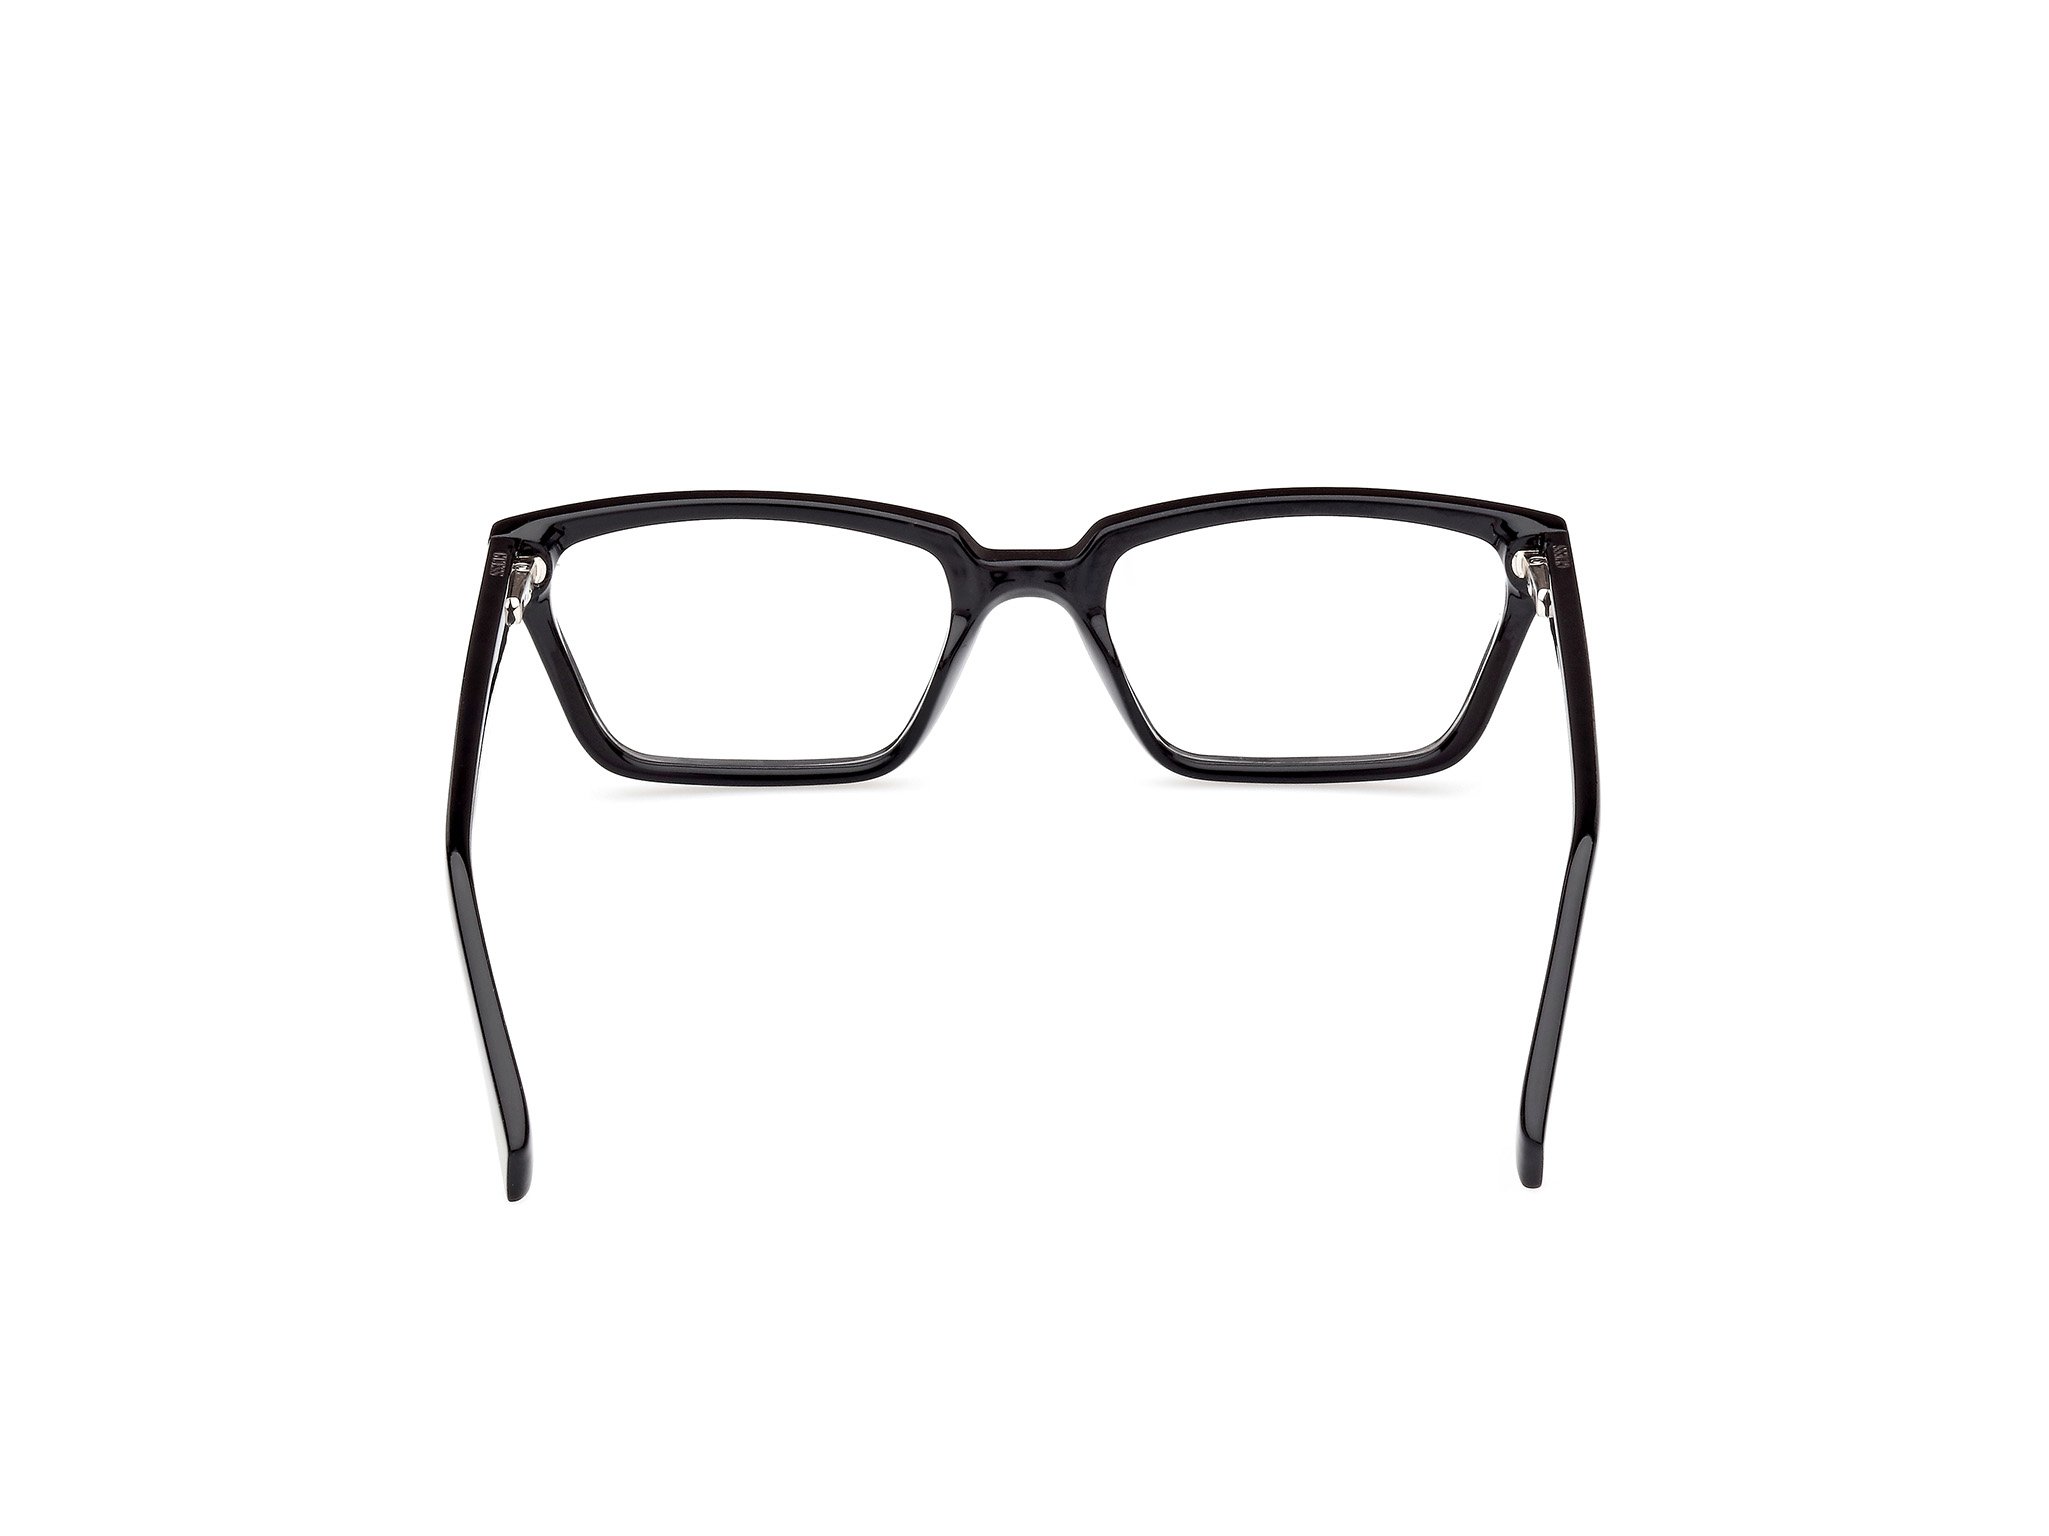 Das Bild zeigt die Korrektionsbrille GU8080 001 von der Marke Guess in schwarz.